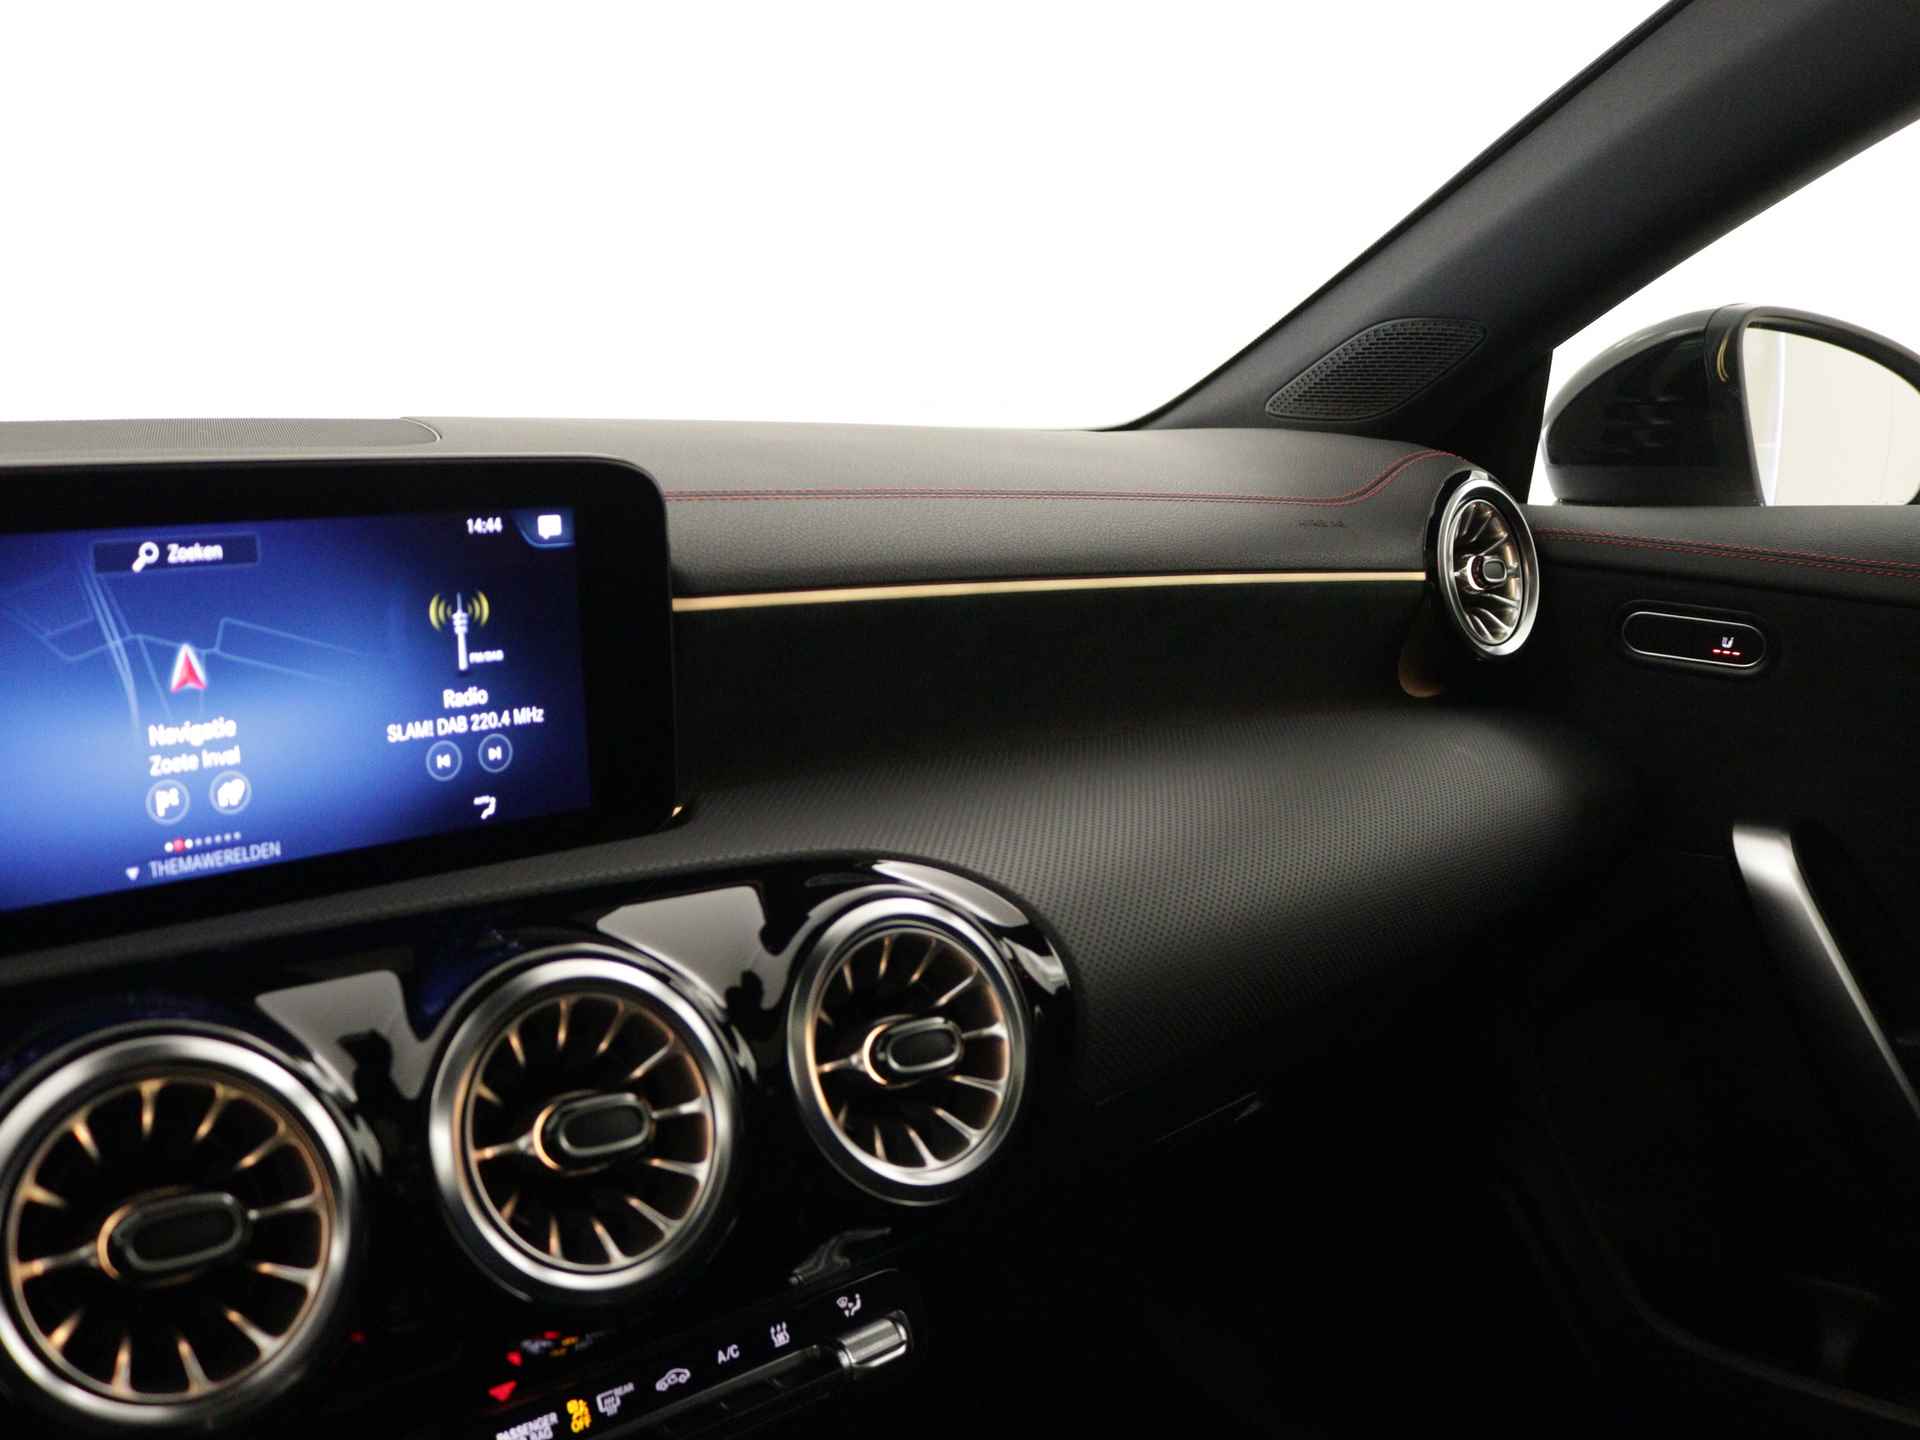 Mercedes-Benz CLA-Klasse 250 e AMG Plug-In Hybride Limited | Panoramadak | Lichtmetalen 5 spaaks AMG velgen | MBUX wide screen | Navigatie | Parking support | Inclusief 24 maanden MB Certified garantie voor Europa. - 8/45